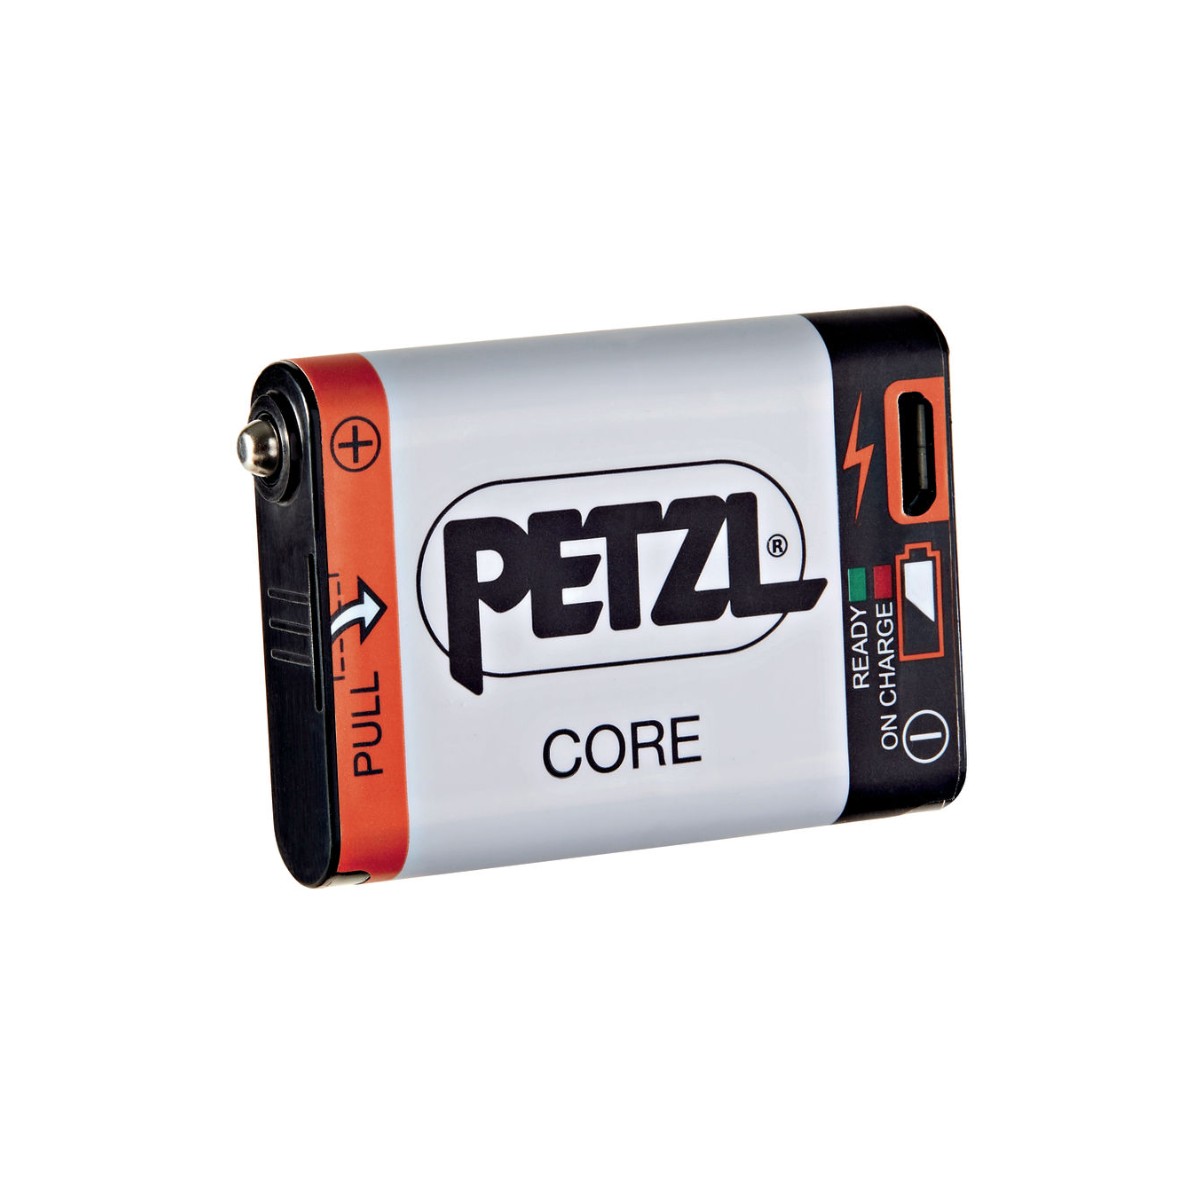 Dir Den günstig Kaufen-Petzl Accu Core Batterie. Petzl Accu Core Batterie <![CDATA[Petzl Accu Core Akku Batterie kompatibel mit Petzl-Stirnlampen mit HYBRID CONCEPT-Konstruktion. Es wird direkt über den integrierten USB-Anschluss aufgeladen. Die CORE-Batterie ist eine wirtscha